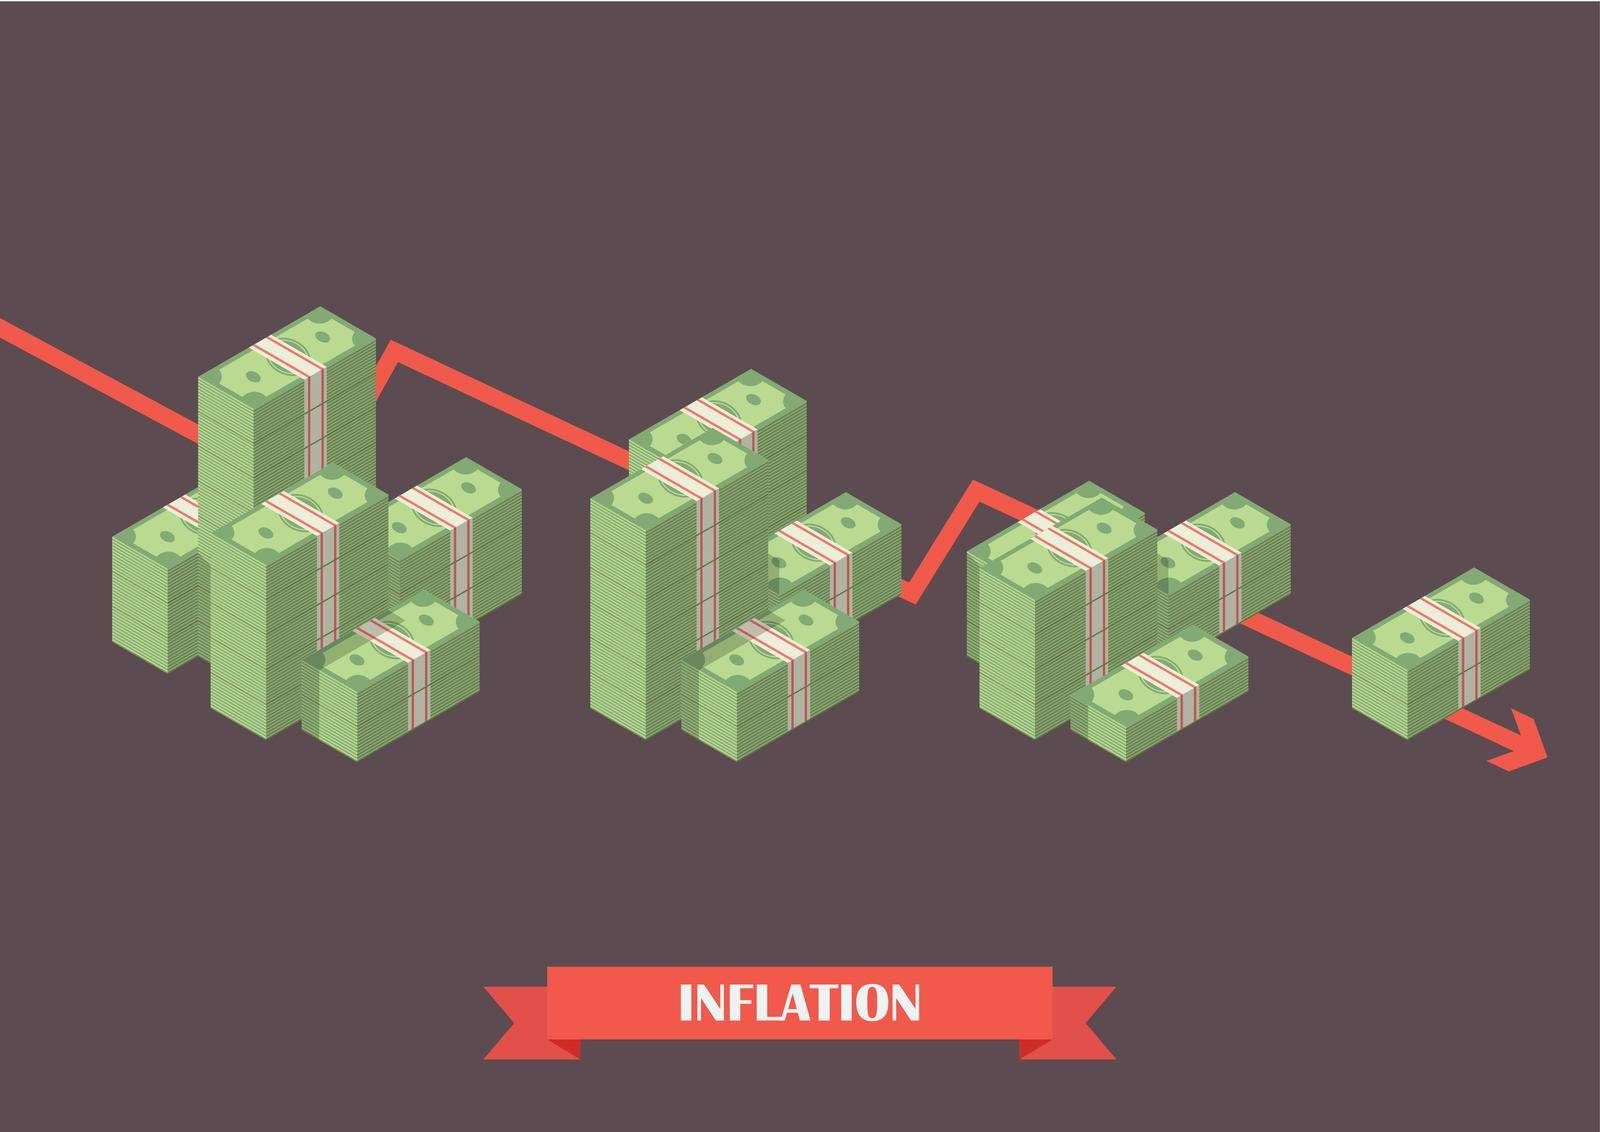 Cash money inflation concept. Economy concept